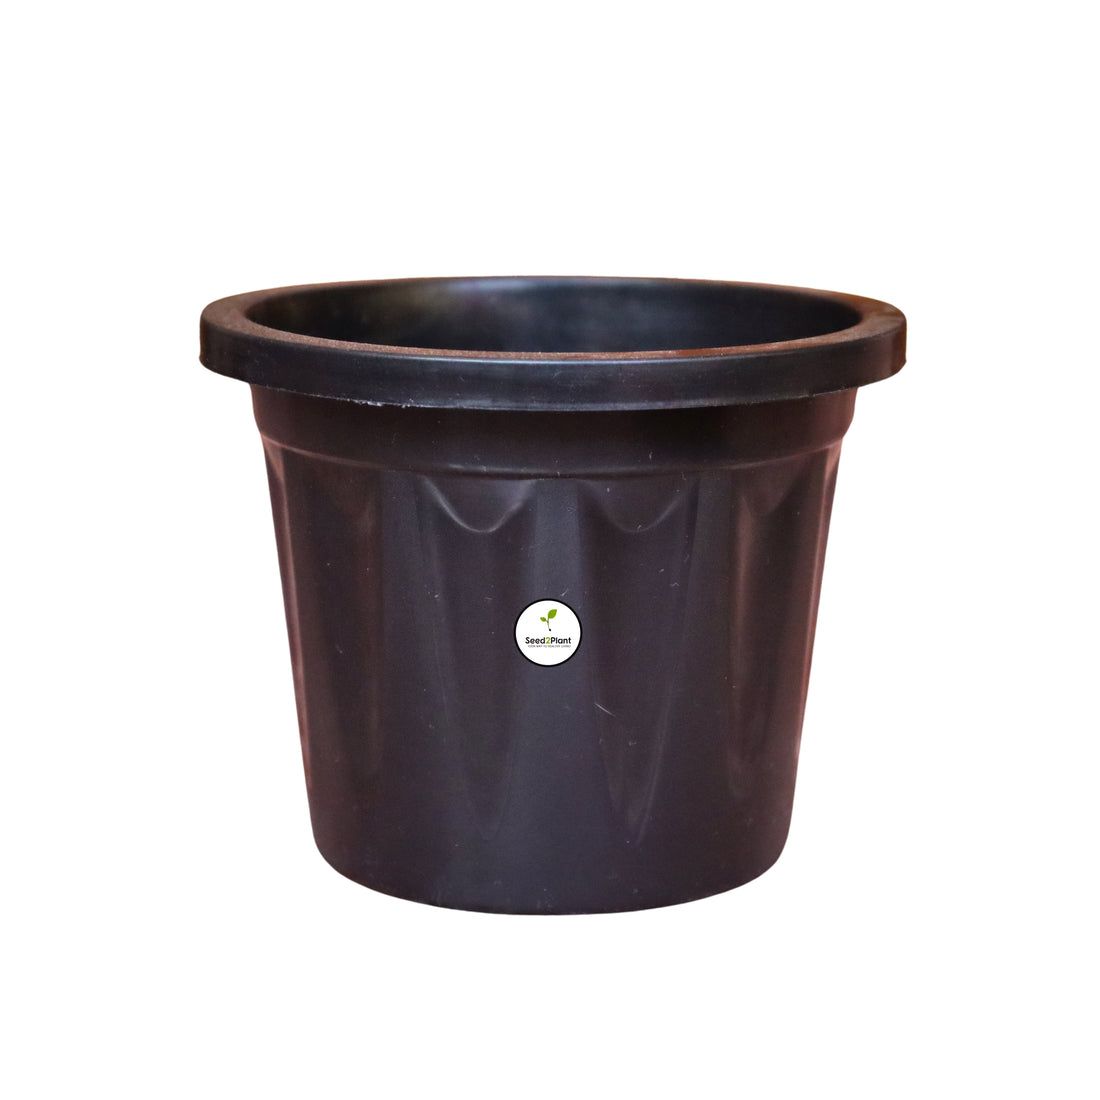 5 Inch Plastic Pot / Planter - Black Colour